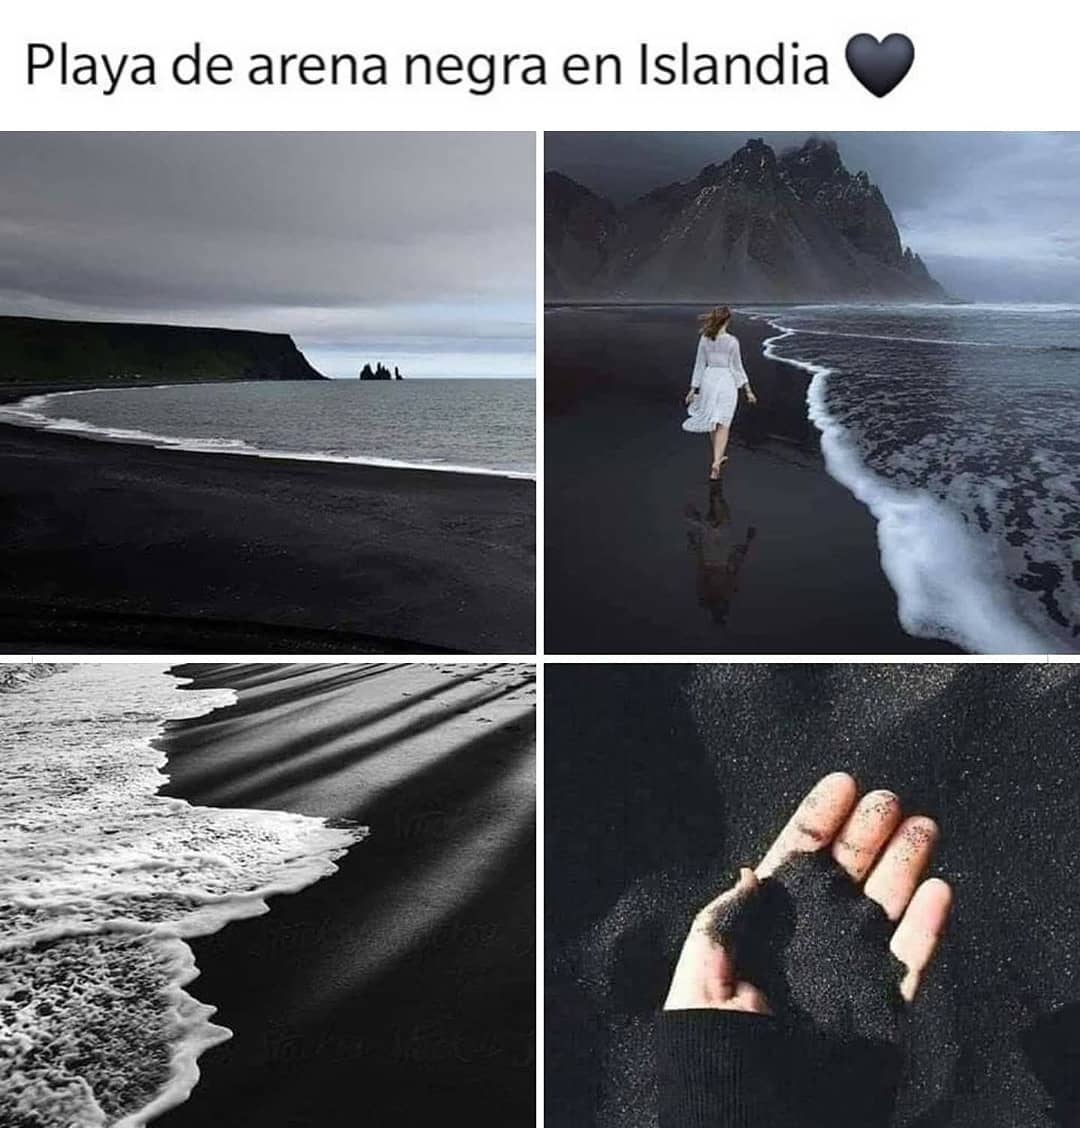 Playa de arena negra en Islandia.